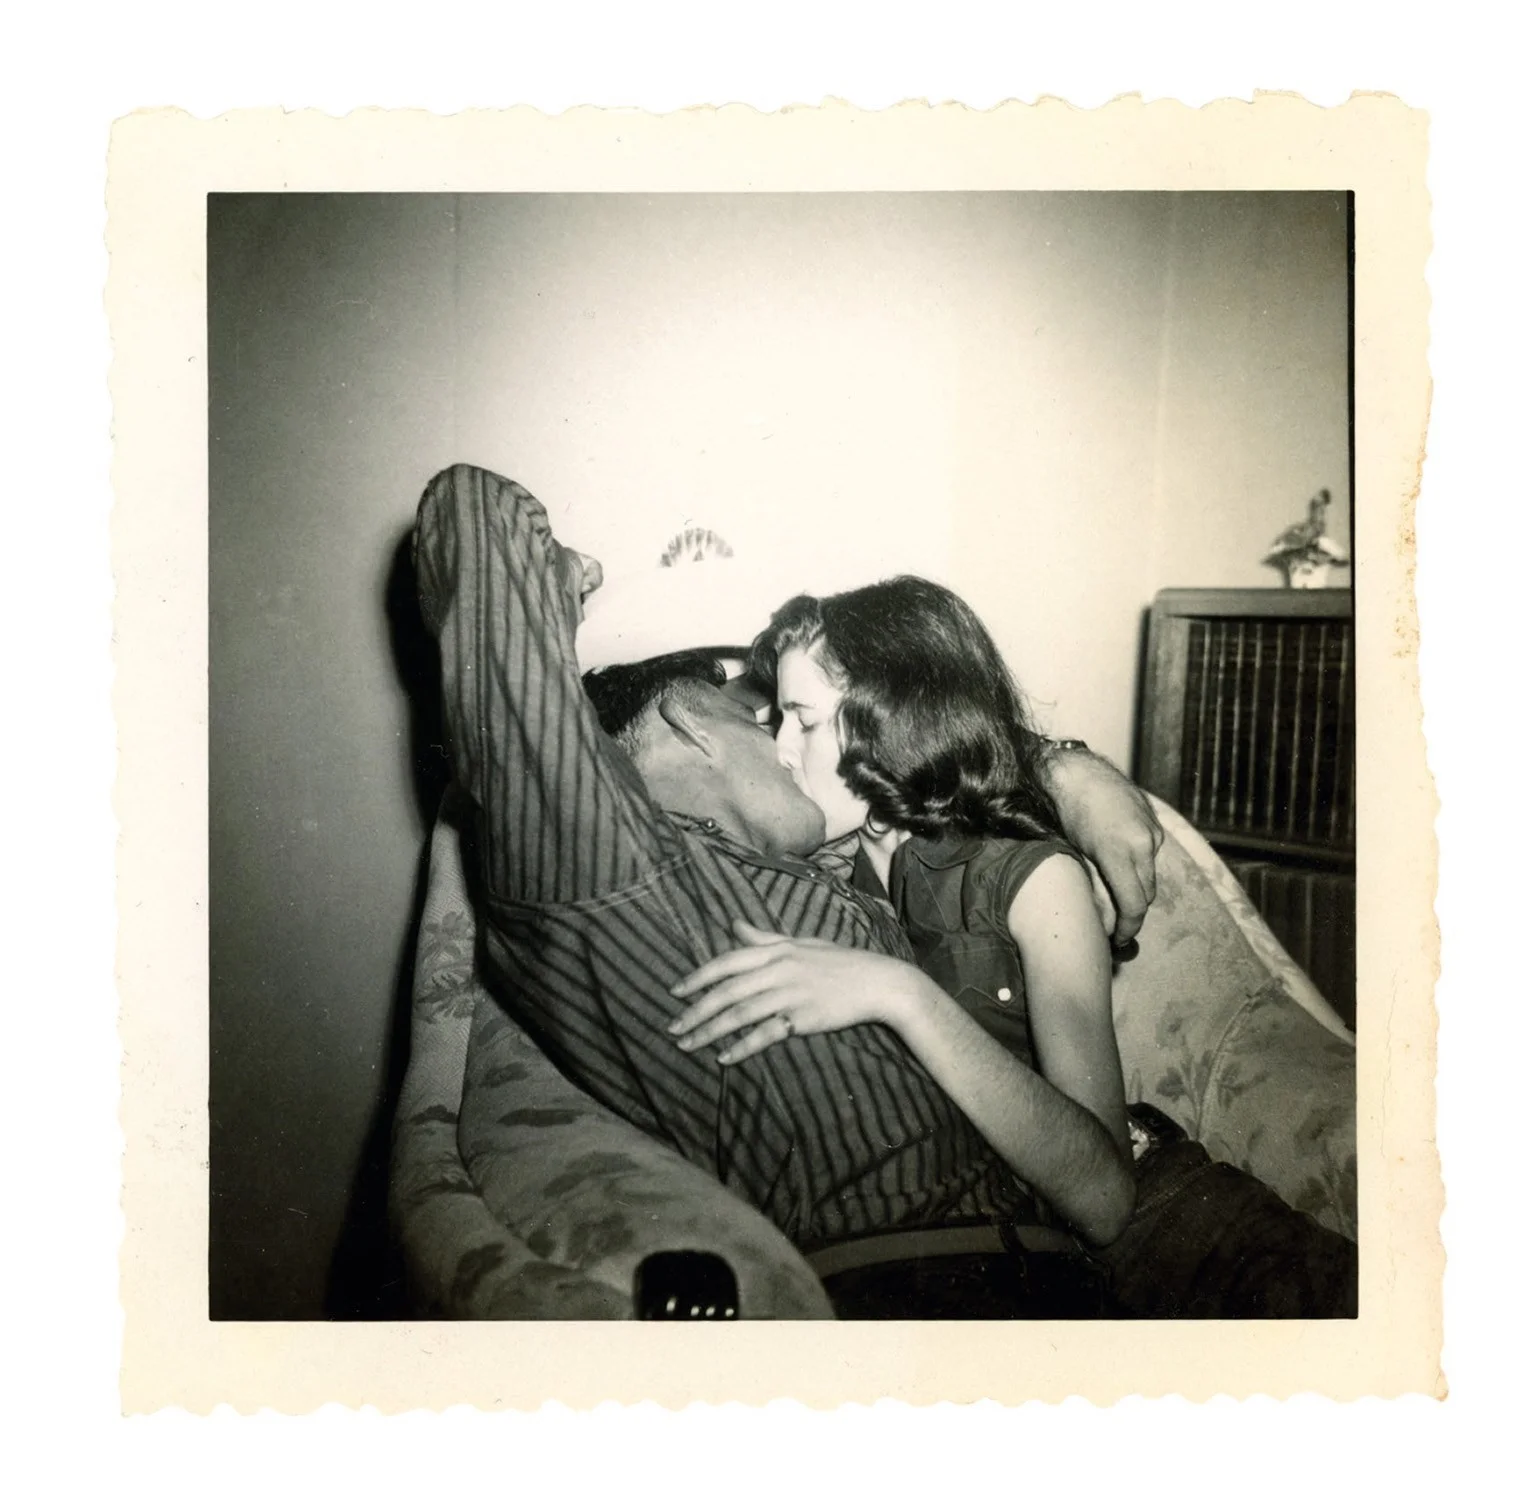 Машина часу: архівні фото про те, як цілувалися закохані 100 років тому - фото 486029